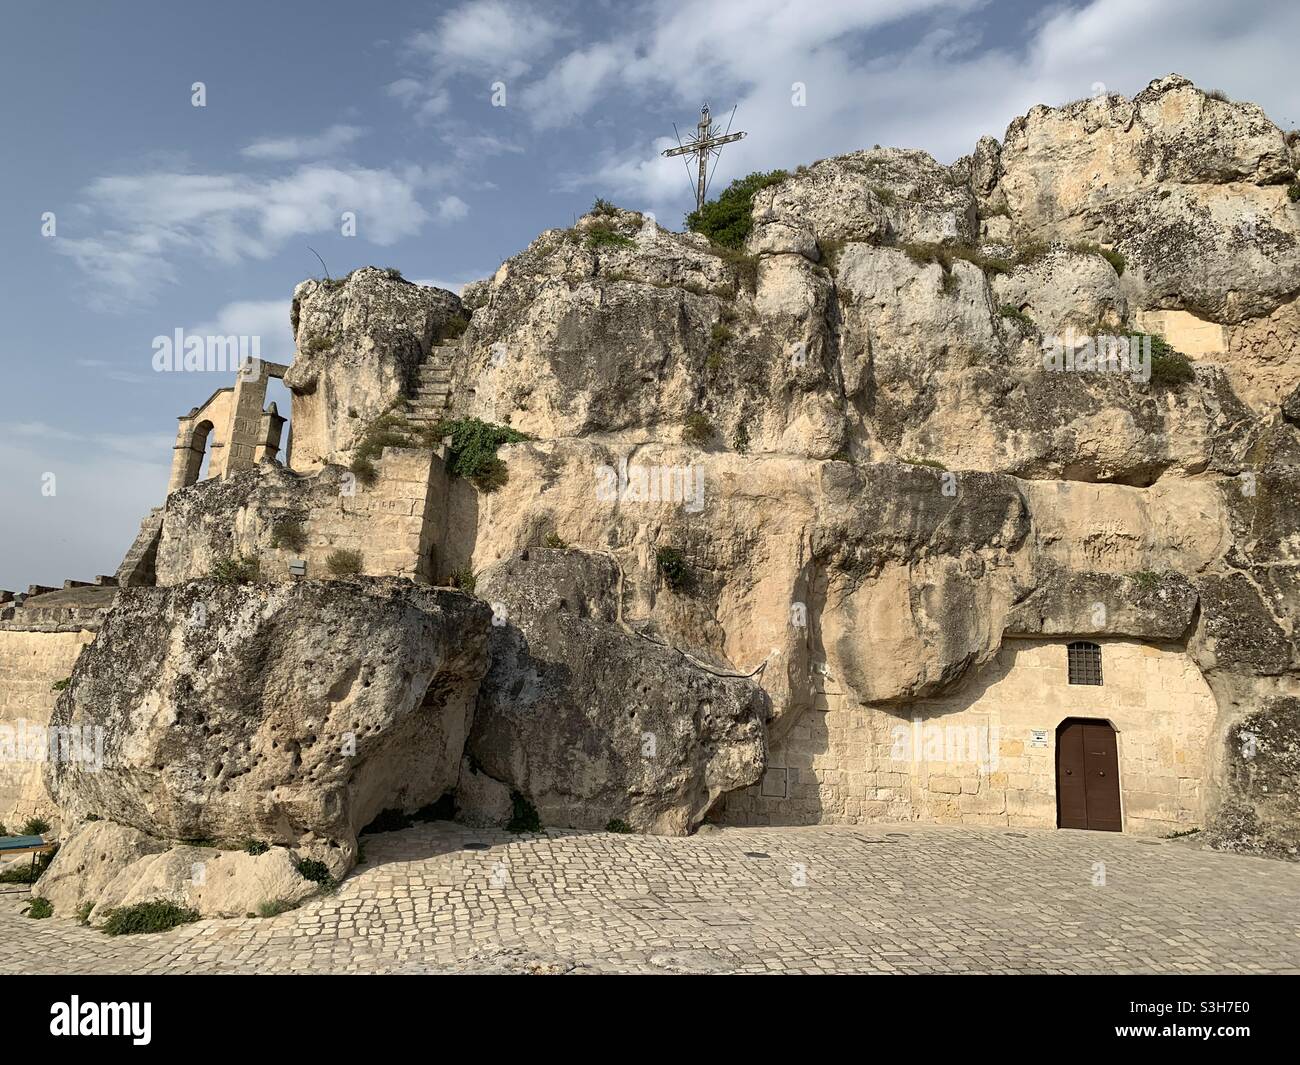 Chiesa costruita in pietra nella città di Matera, patrimonio dell'umanità dell'UNESCO. Foto Stock